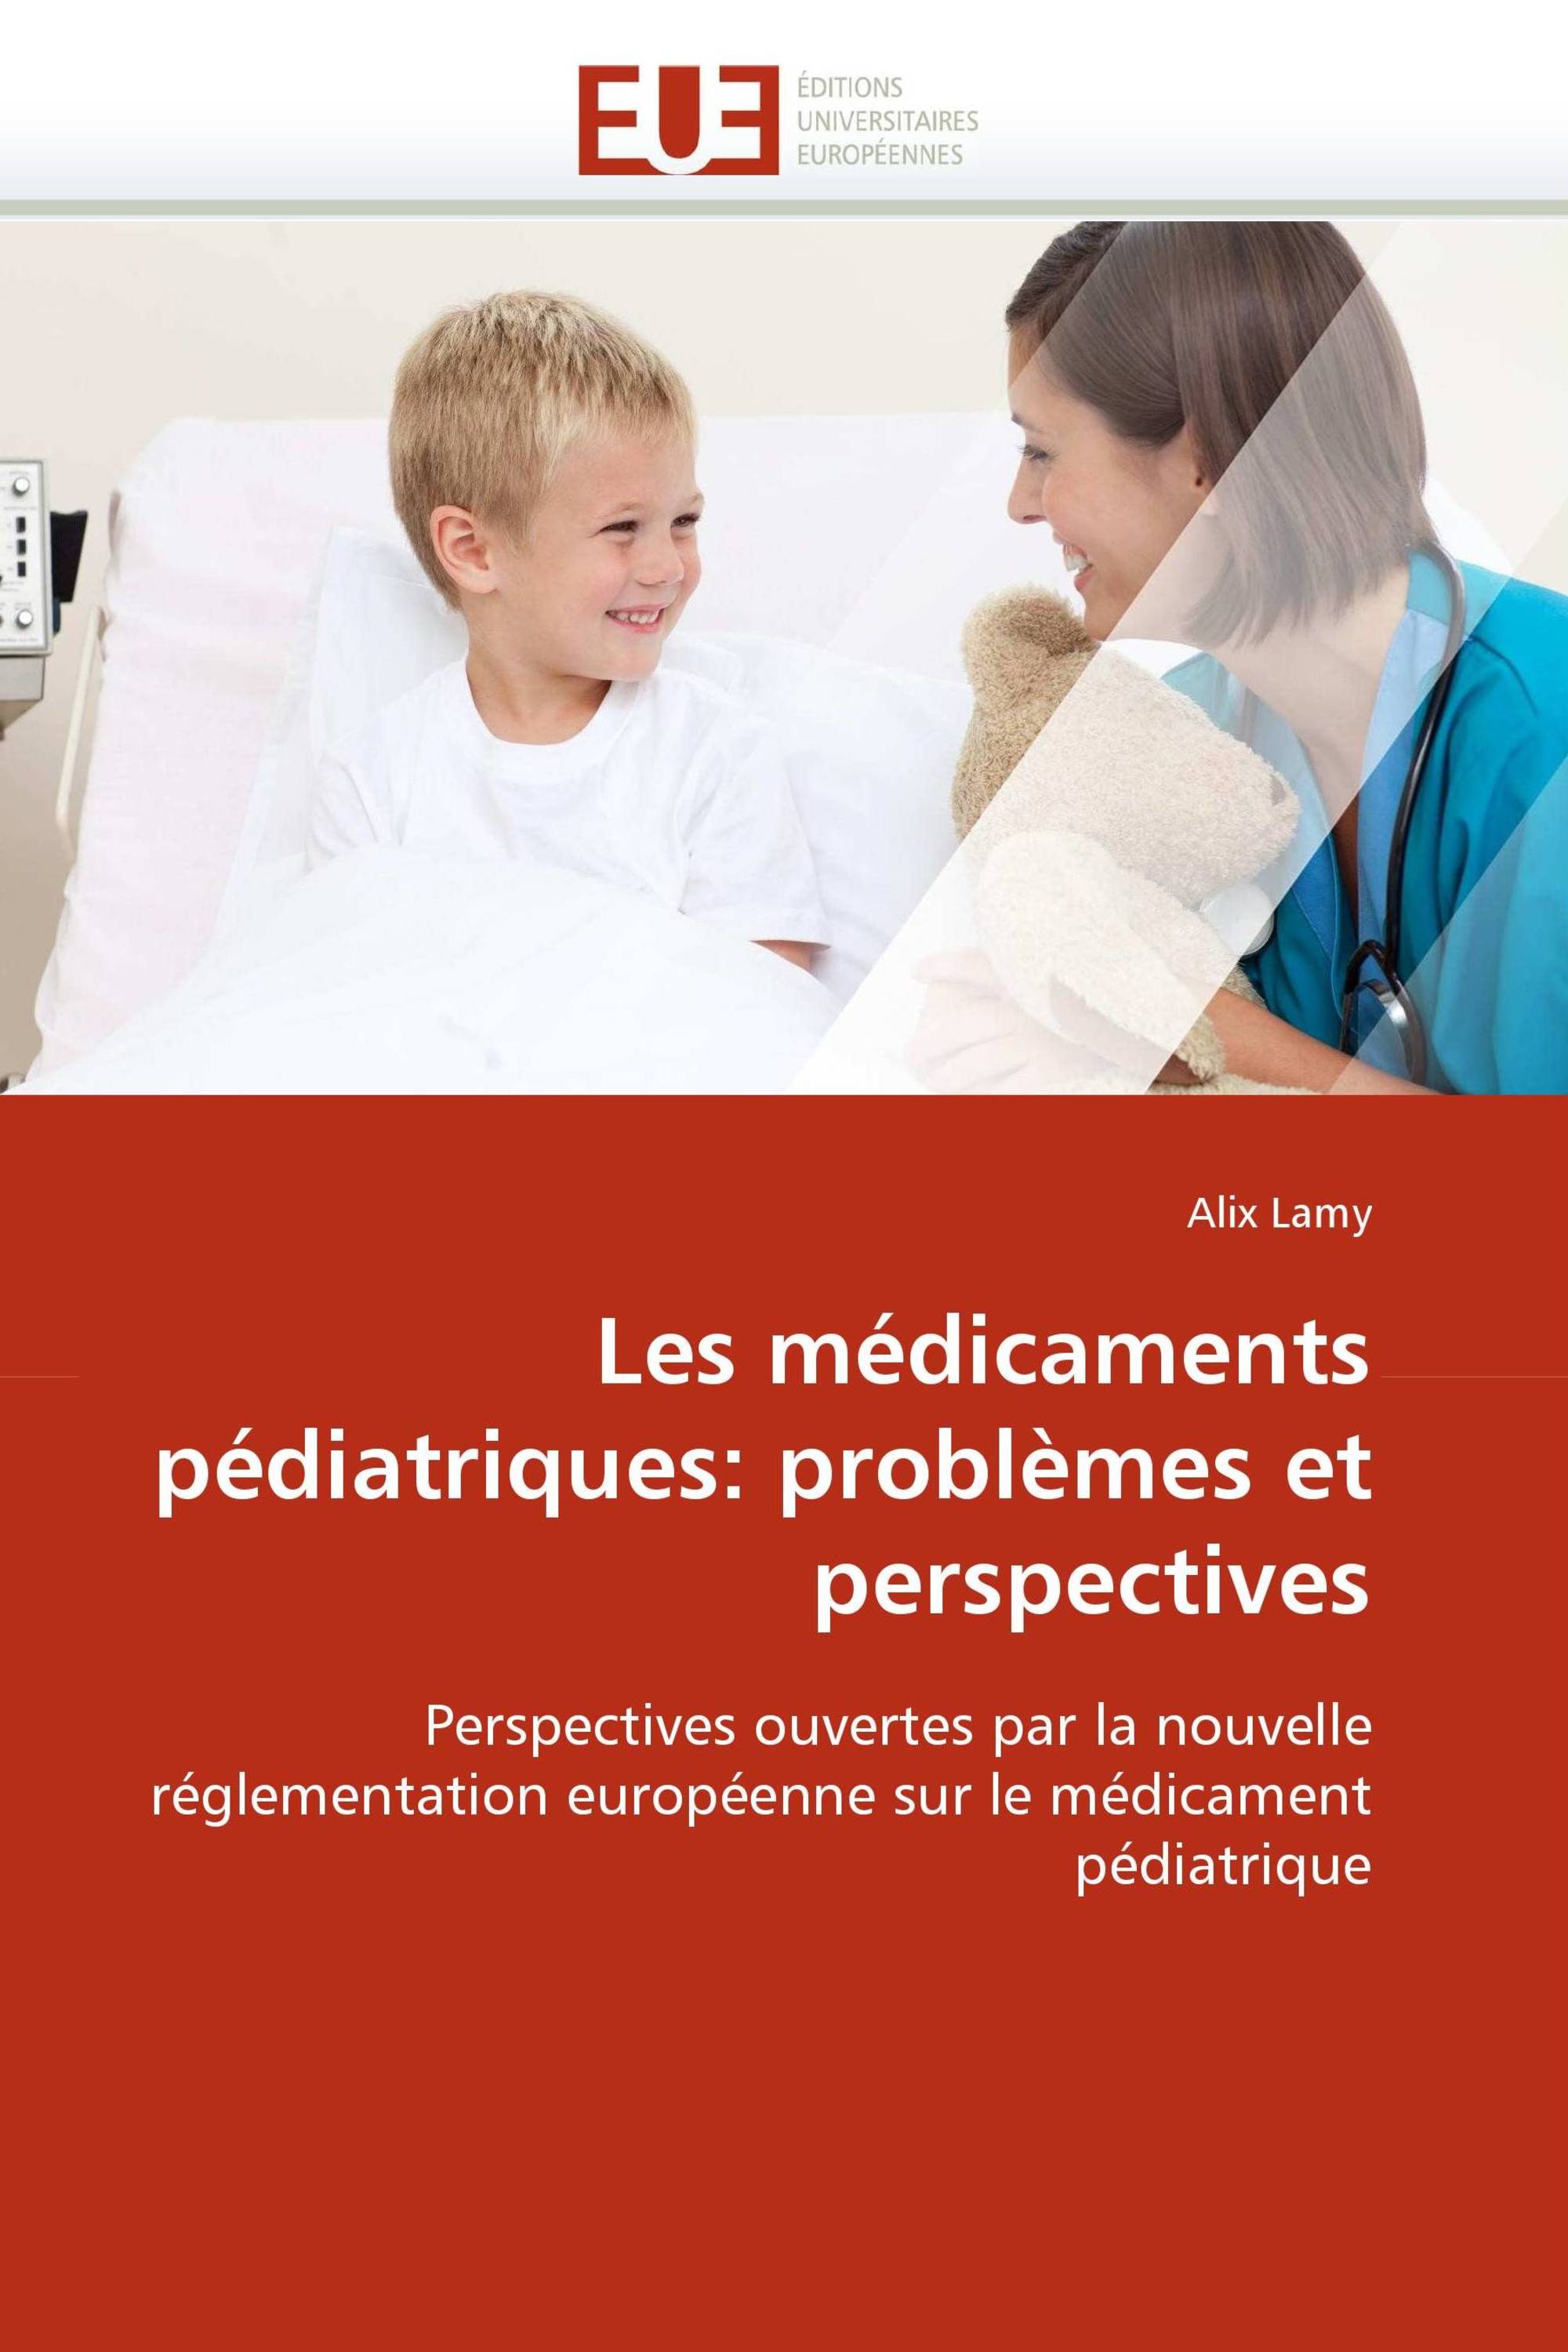 Les médicaments pédiatriques: problèmes et perspectives